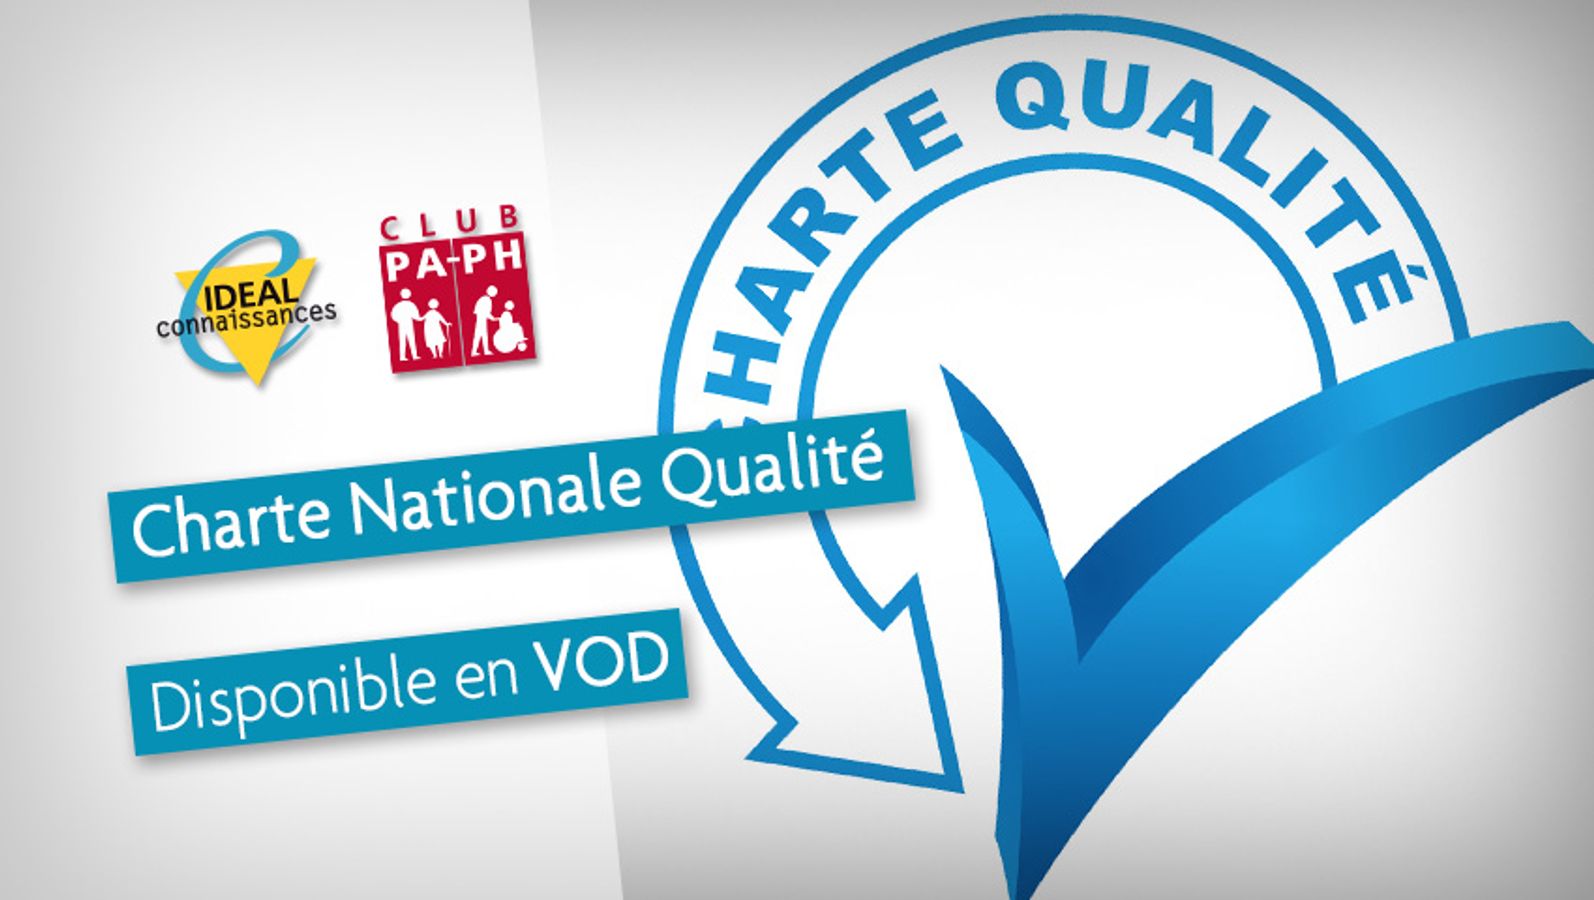 Charte Nationale Qualité